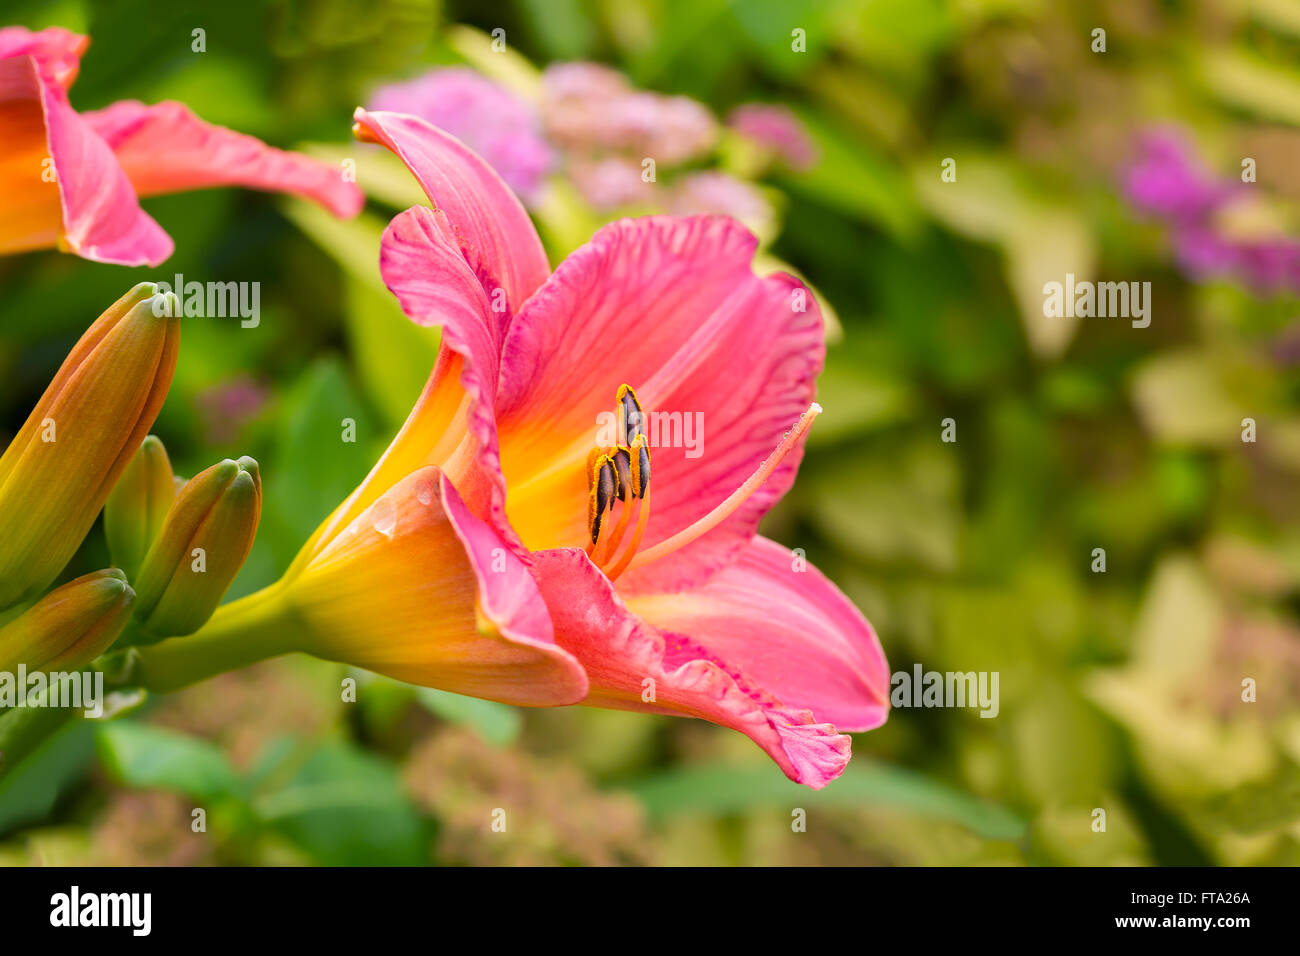 Daylilies found in the summer garden. Stock Photo